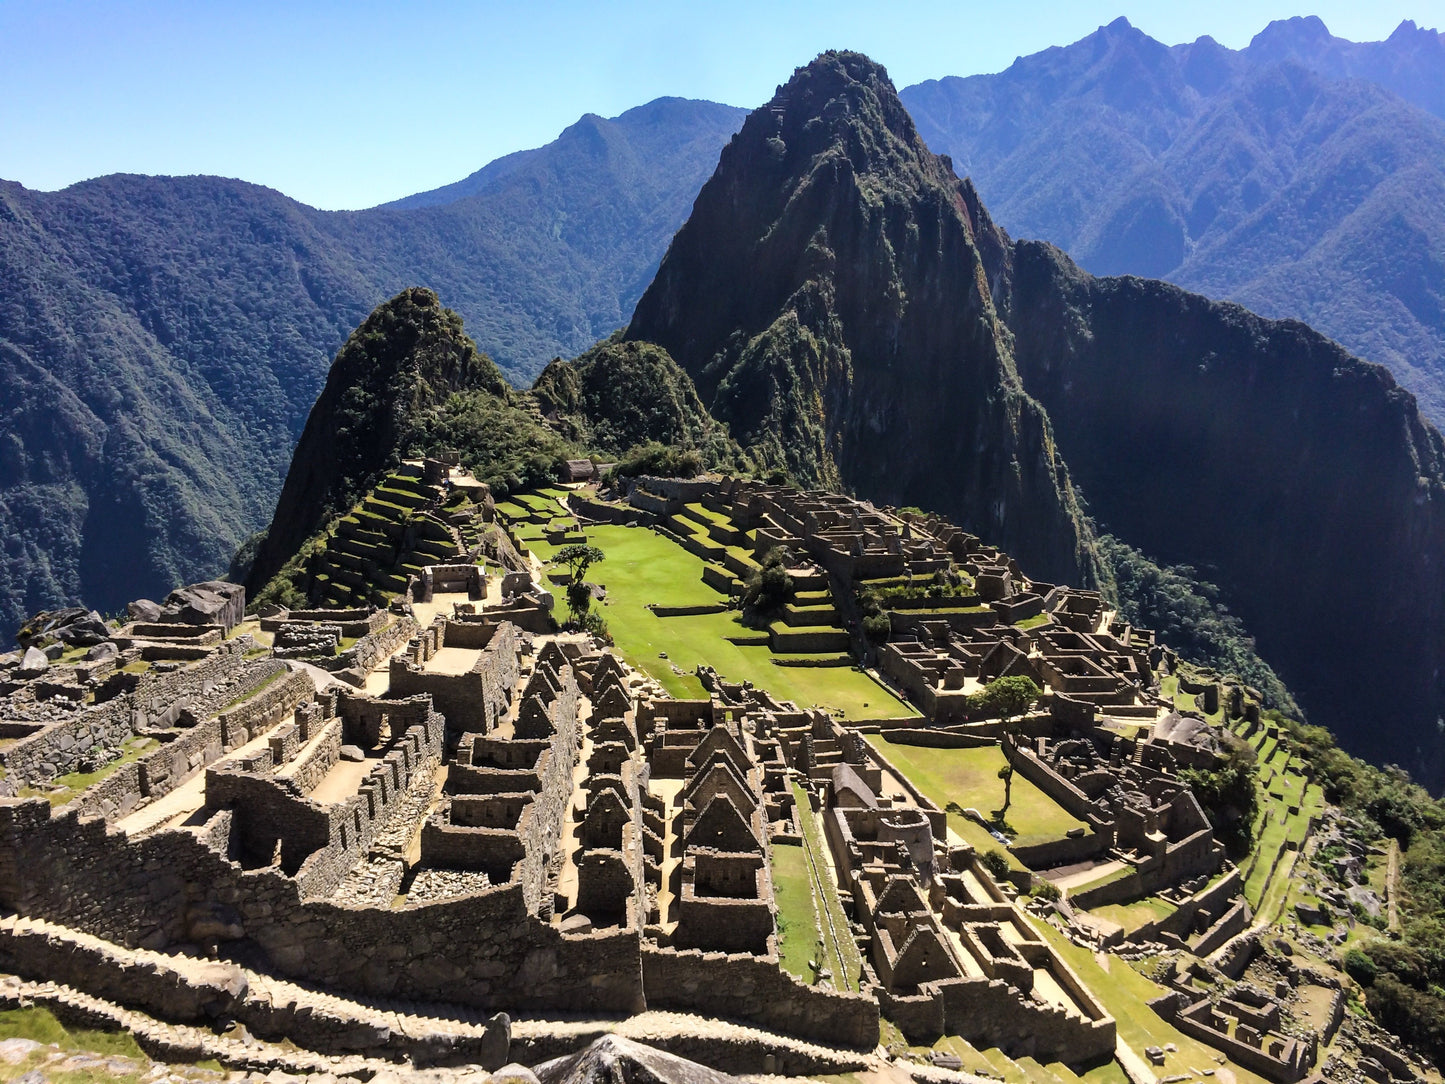 319 - Lost City of the Incas, Machu Picchu, Perù